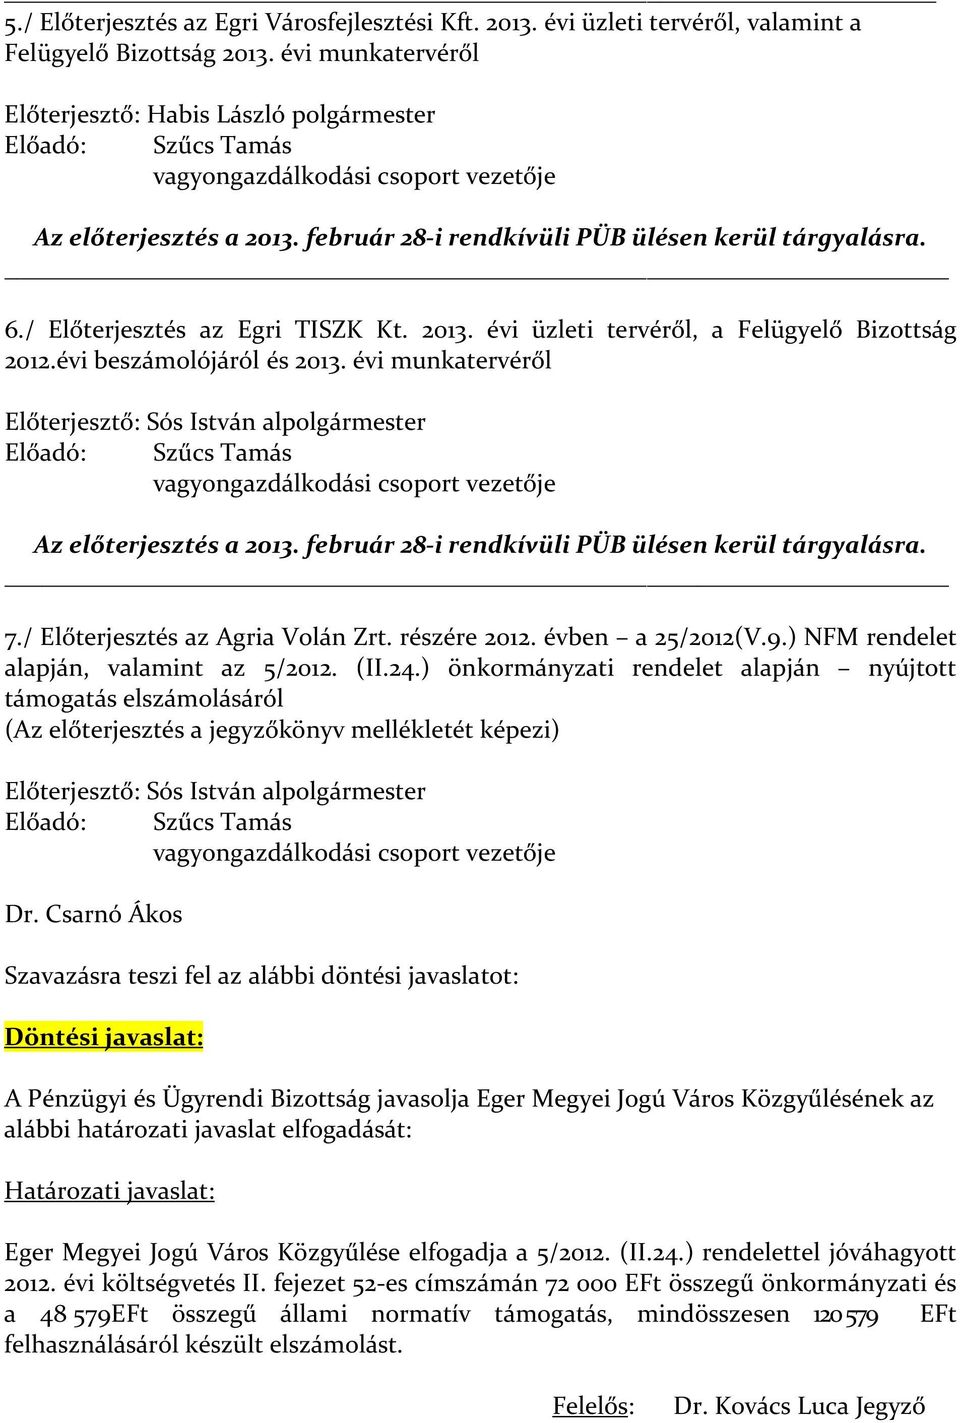 / Előterjesztés az Egri TISZK Kt. 2013. évi üzleti tervéről, a Felügyelő Bizottság 2012.évi beszámolójáról és 2013.